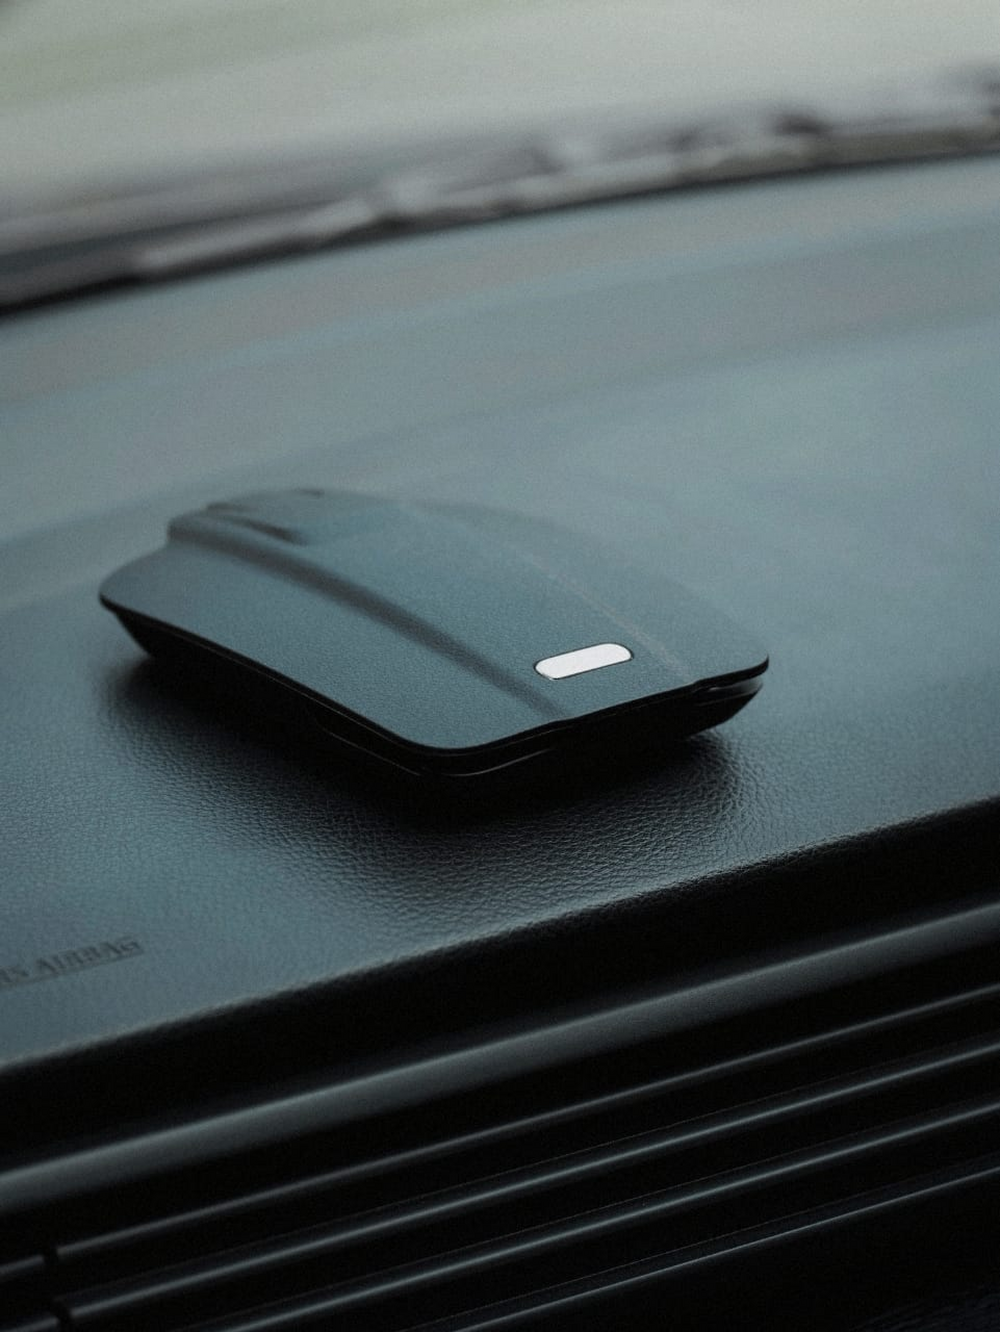 SKYVIK TRUHOLD GPS Clutch Car mount Smartphone Holder